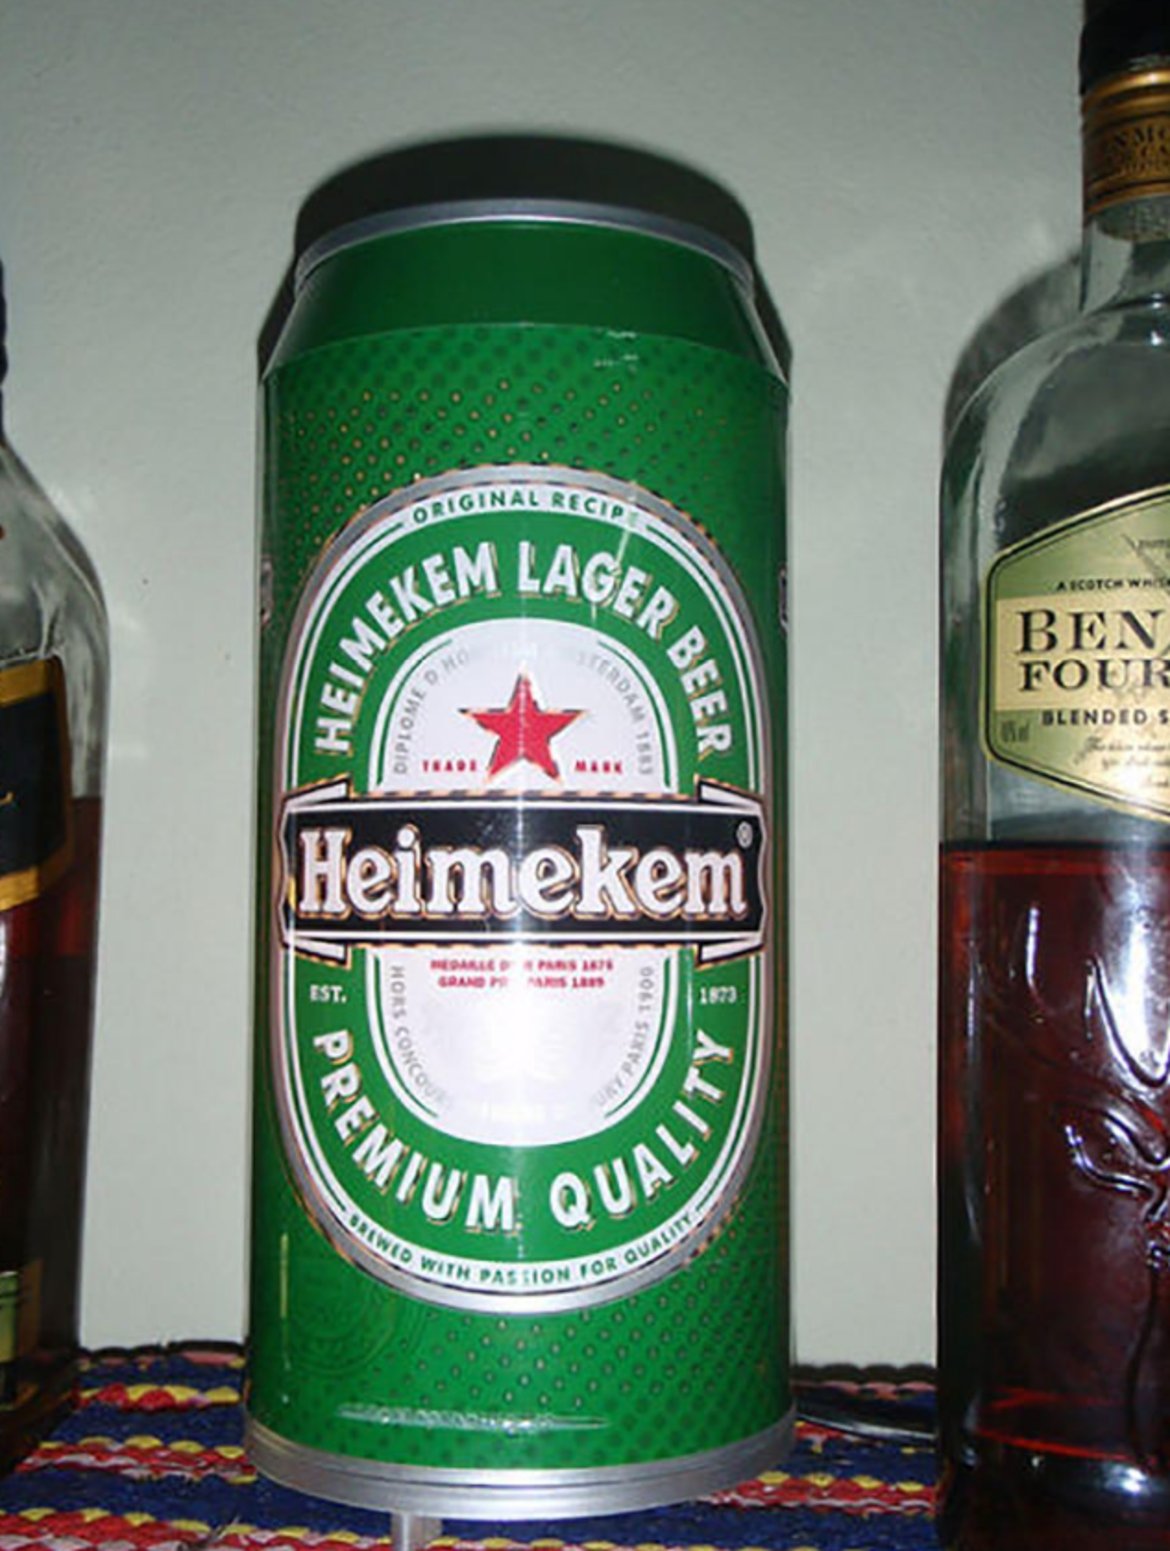 Ако сте жадни, тук е бирата Heimekem. Цветът и логото на кенчето са същите като на холандския оригинал, но вместо Heineken, бирата е Heimekem. Вероятно и вкусът не е същият.